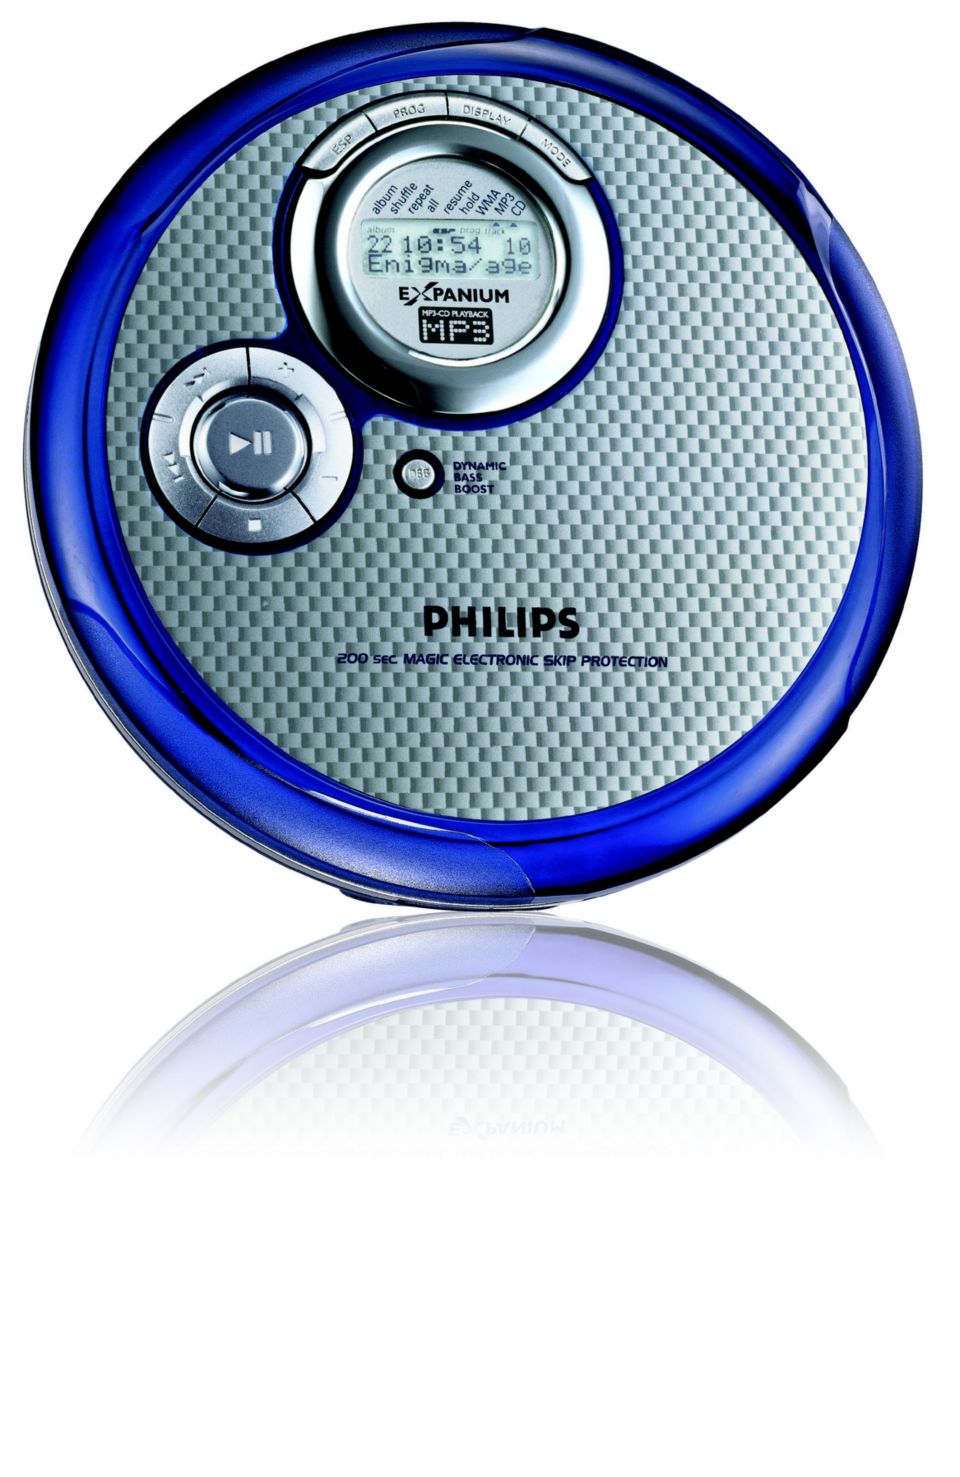 Door vers Autonoom Draagbare CD-speler EXP3361/00C | Philips